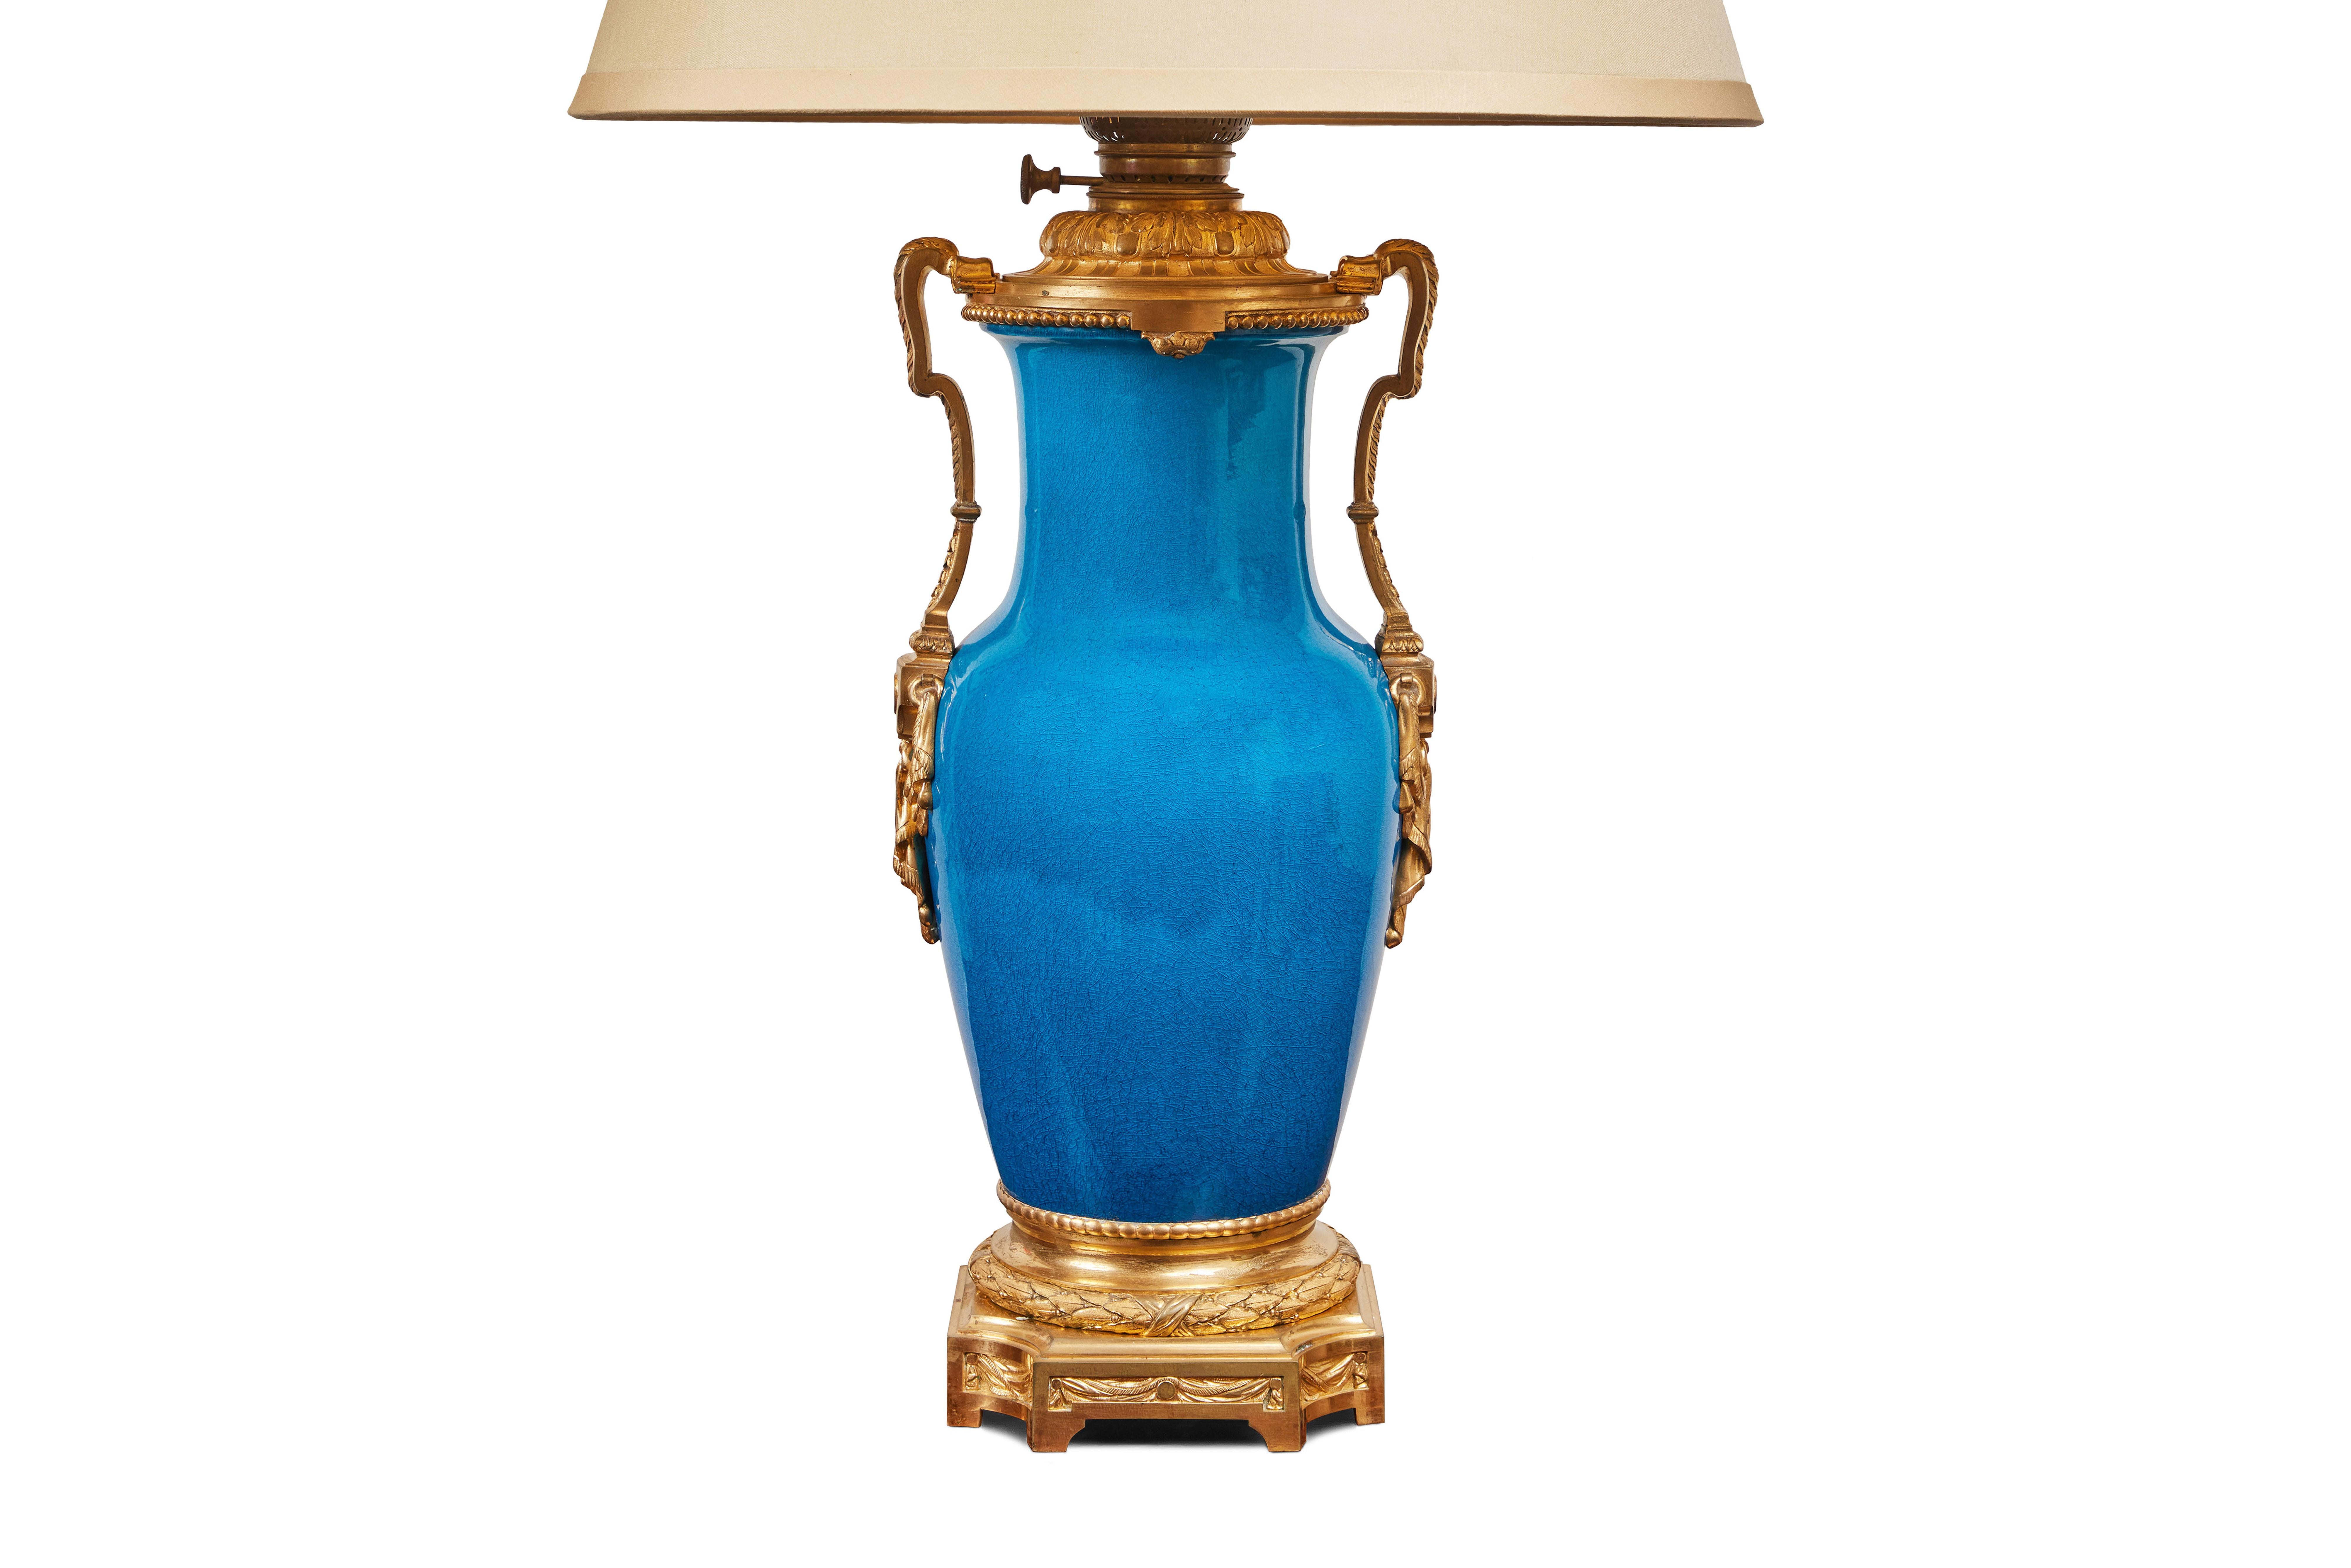 Vase en porcelaine française de style Louis XIV, peint et émaillé à la main, avec de brillantes montures en bronze doré. Au 19ème siècle, la pièce a été transformée en lampe à gaz, mais elle est aujourd'hui branchée sur le courant américain.